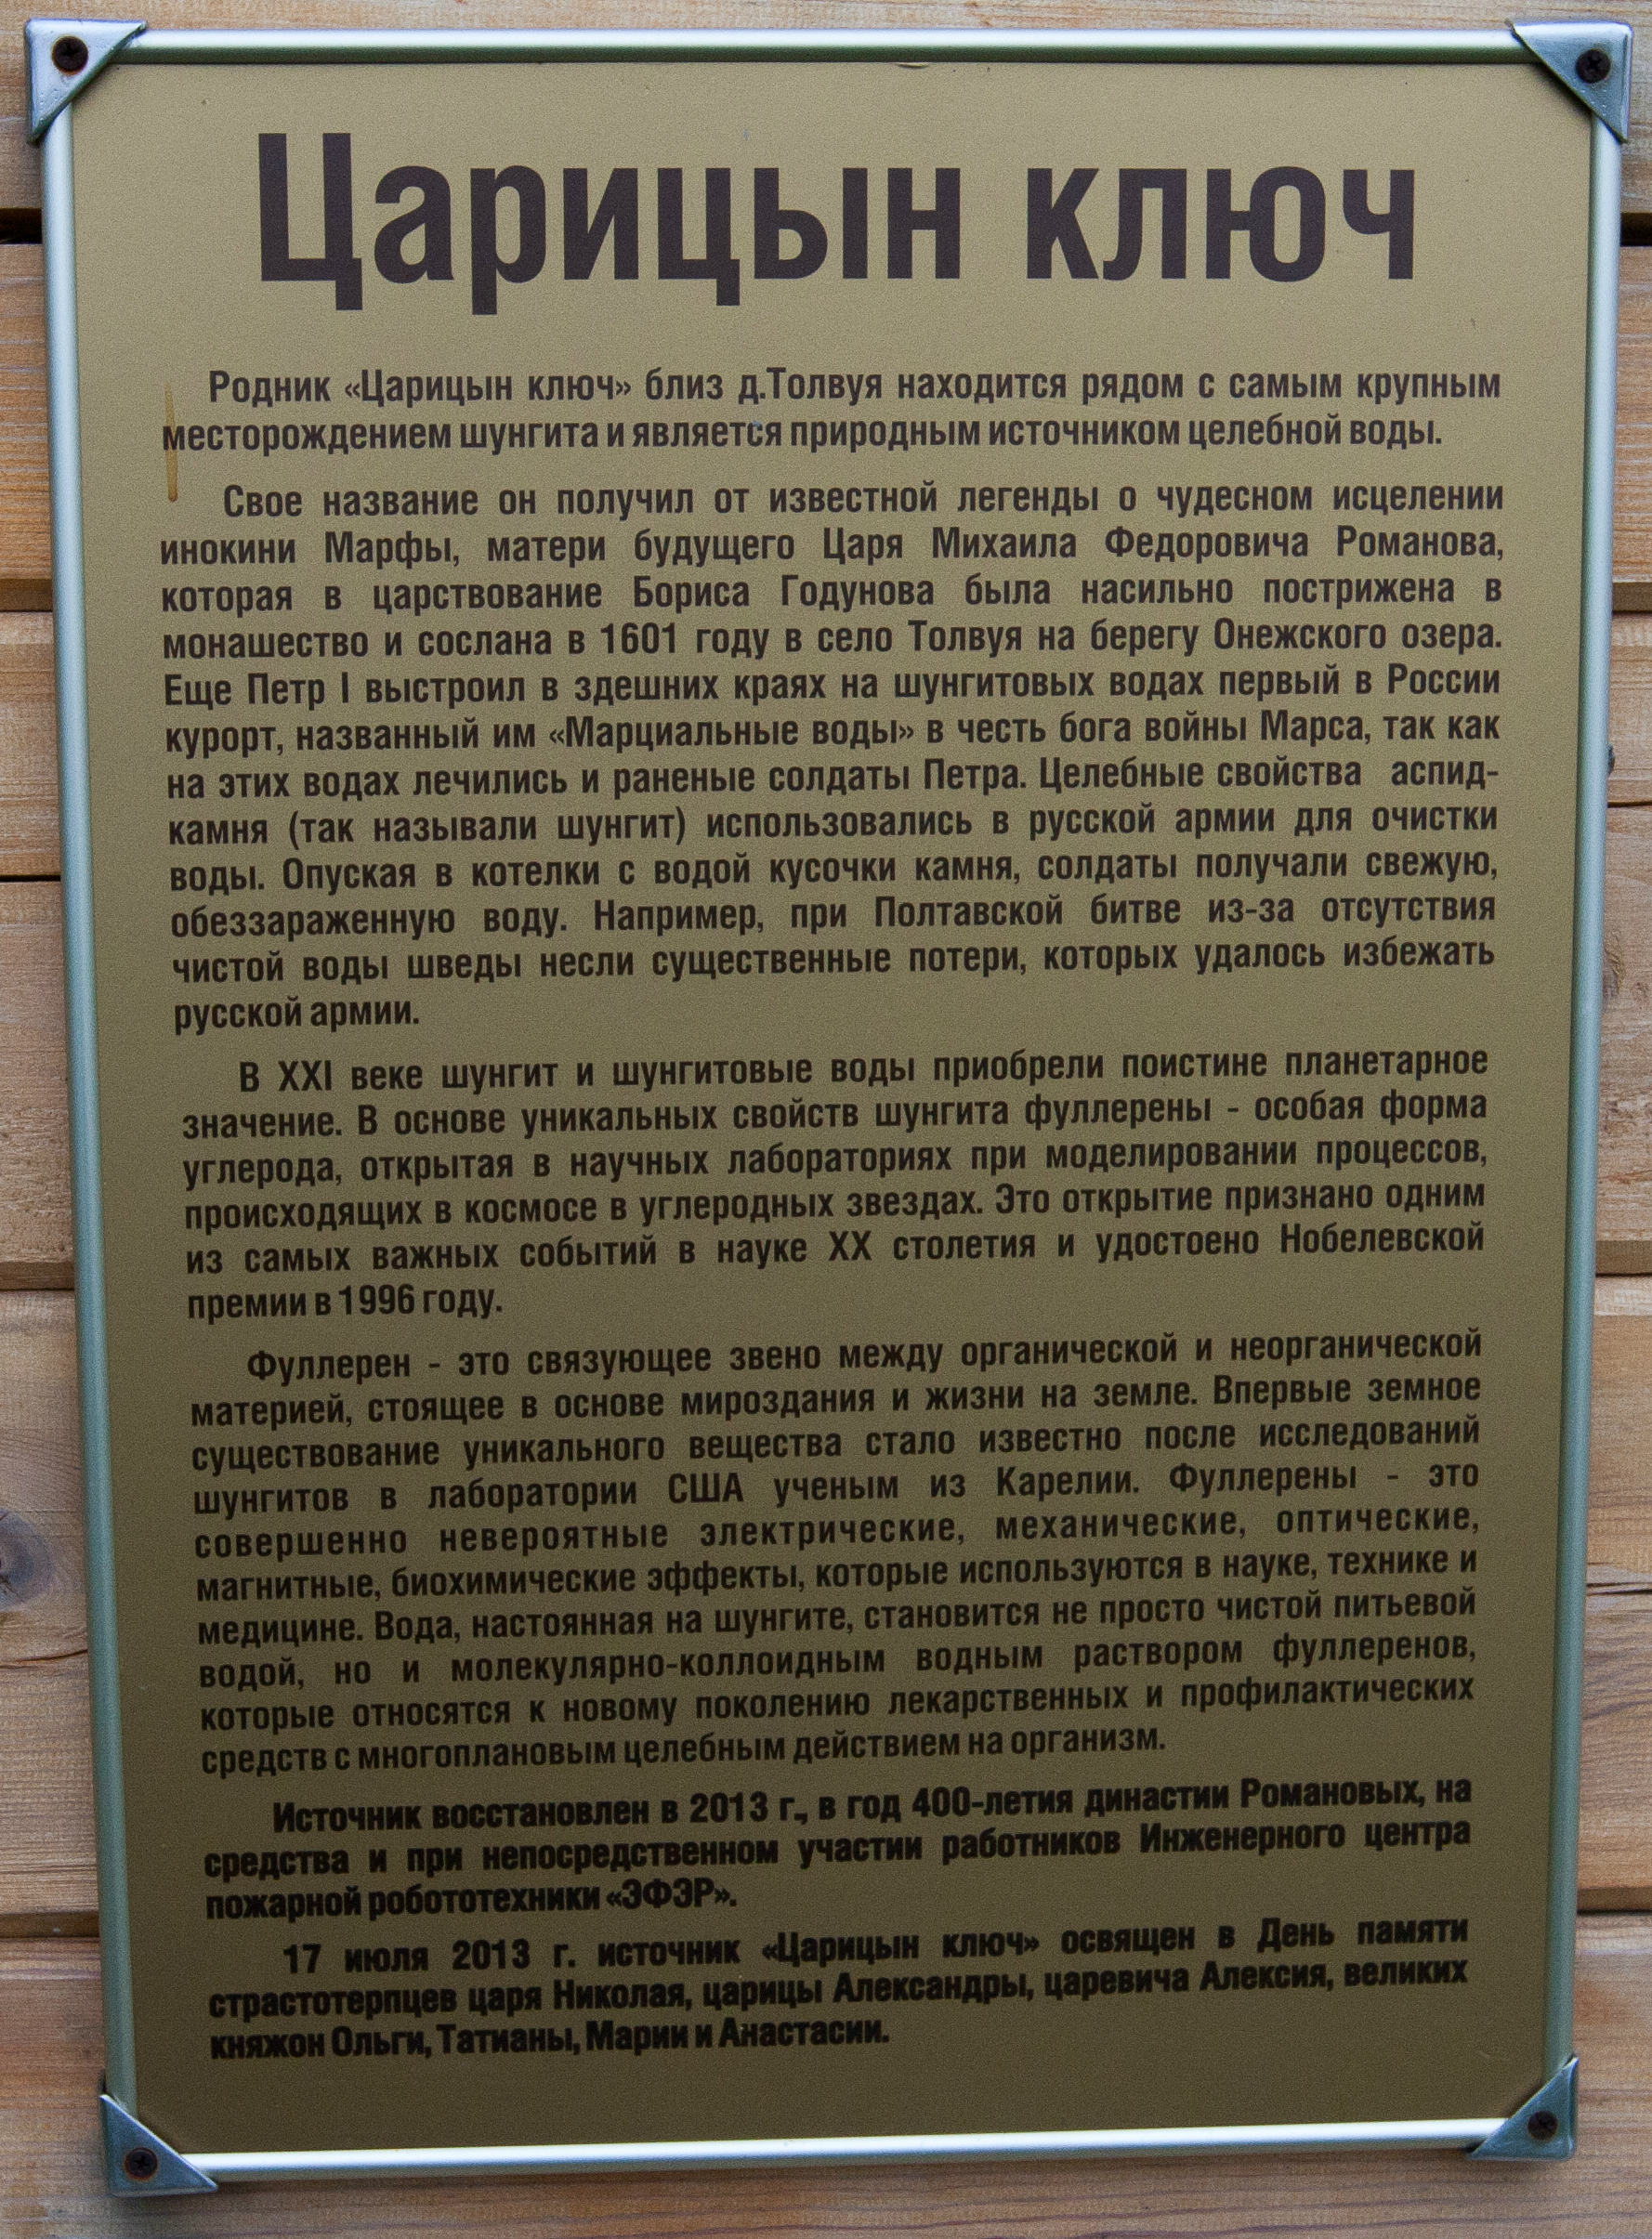 Табличка на входе в Царицын ключ